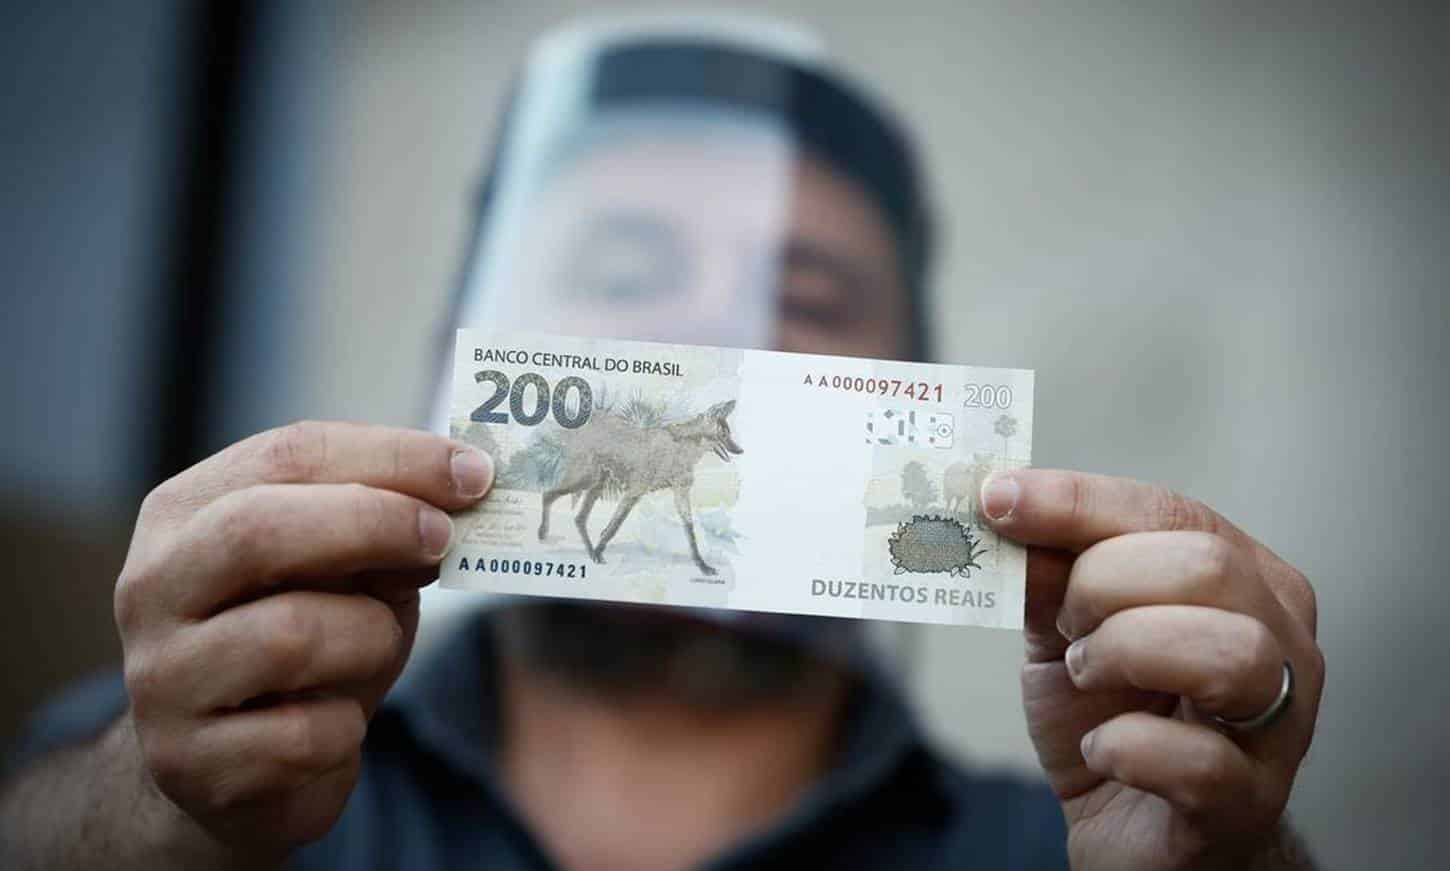 Defensoria entra com ação para que BC tire notas de R$ 200 de circulação 